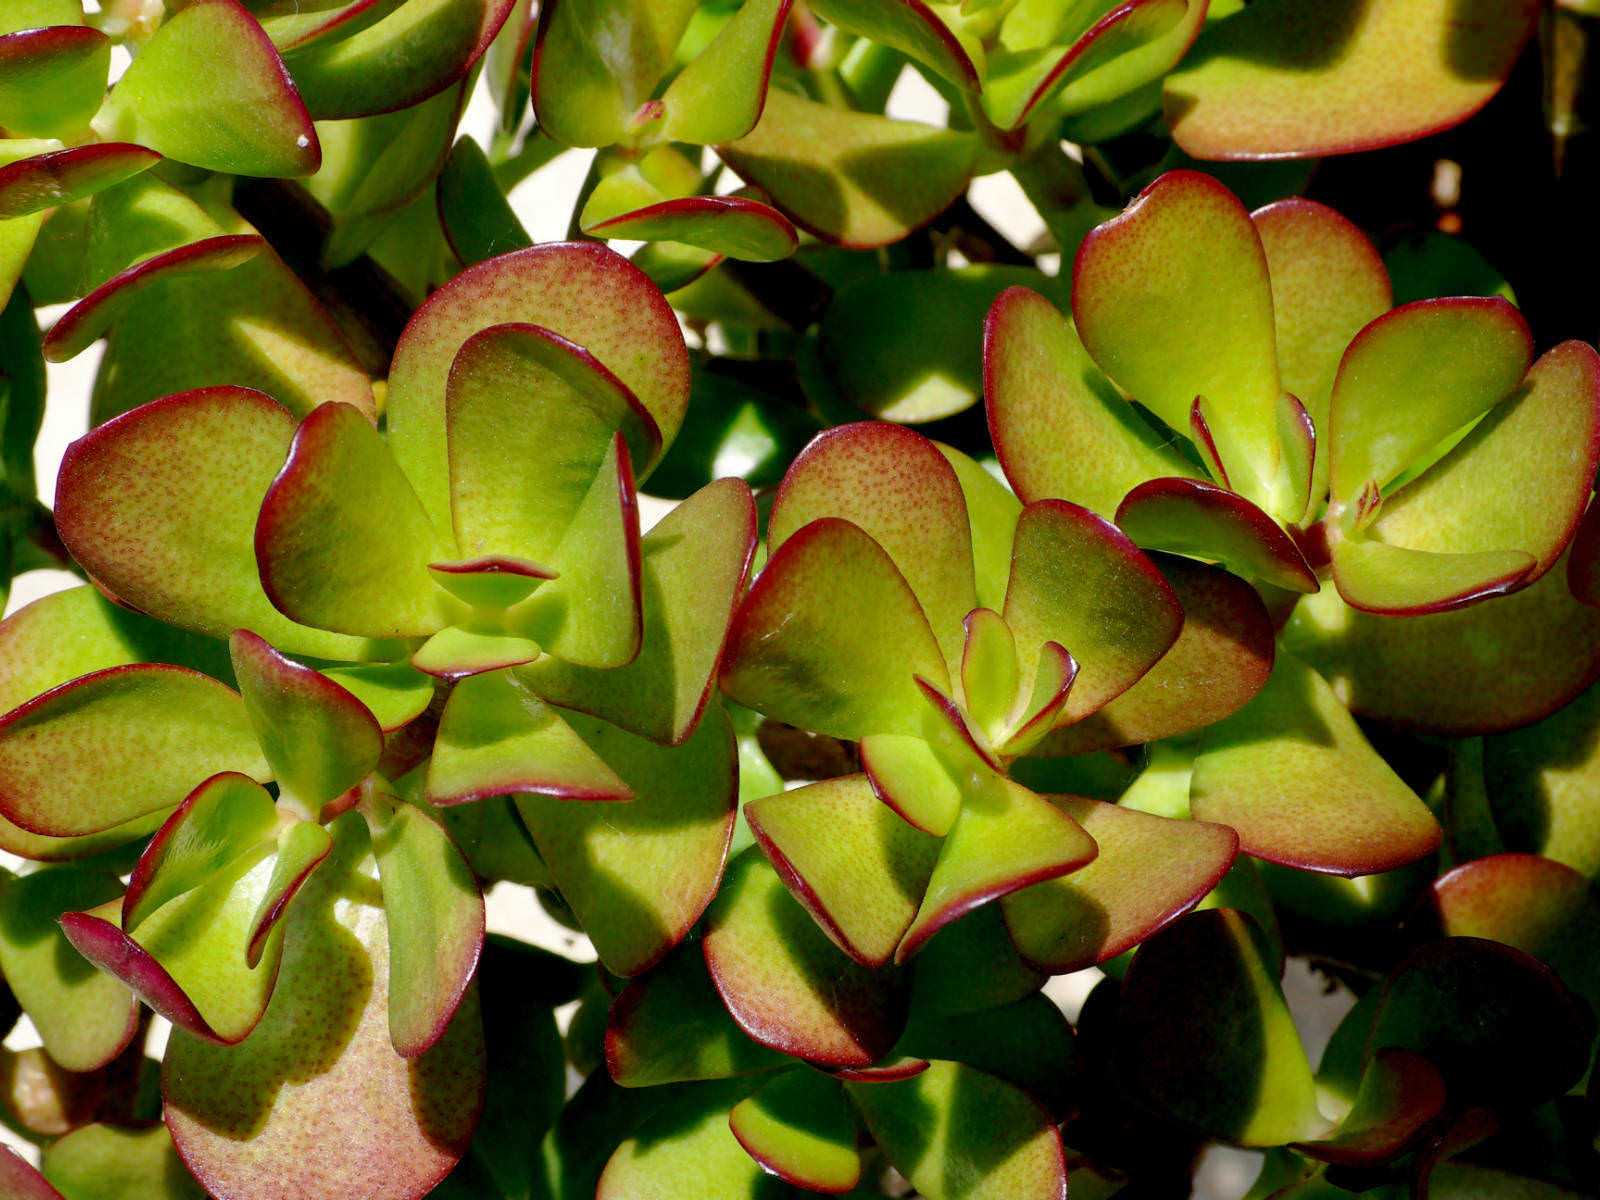 crassula ovata suculentas suculenta succulents grasse arquidicas magnete funziona positiva worldofsucculents plantar jad banilor arborele giada cacto baccifera rhipsalis macarrão